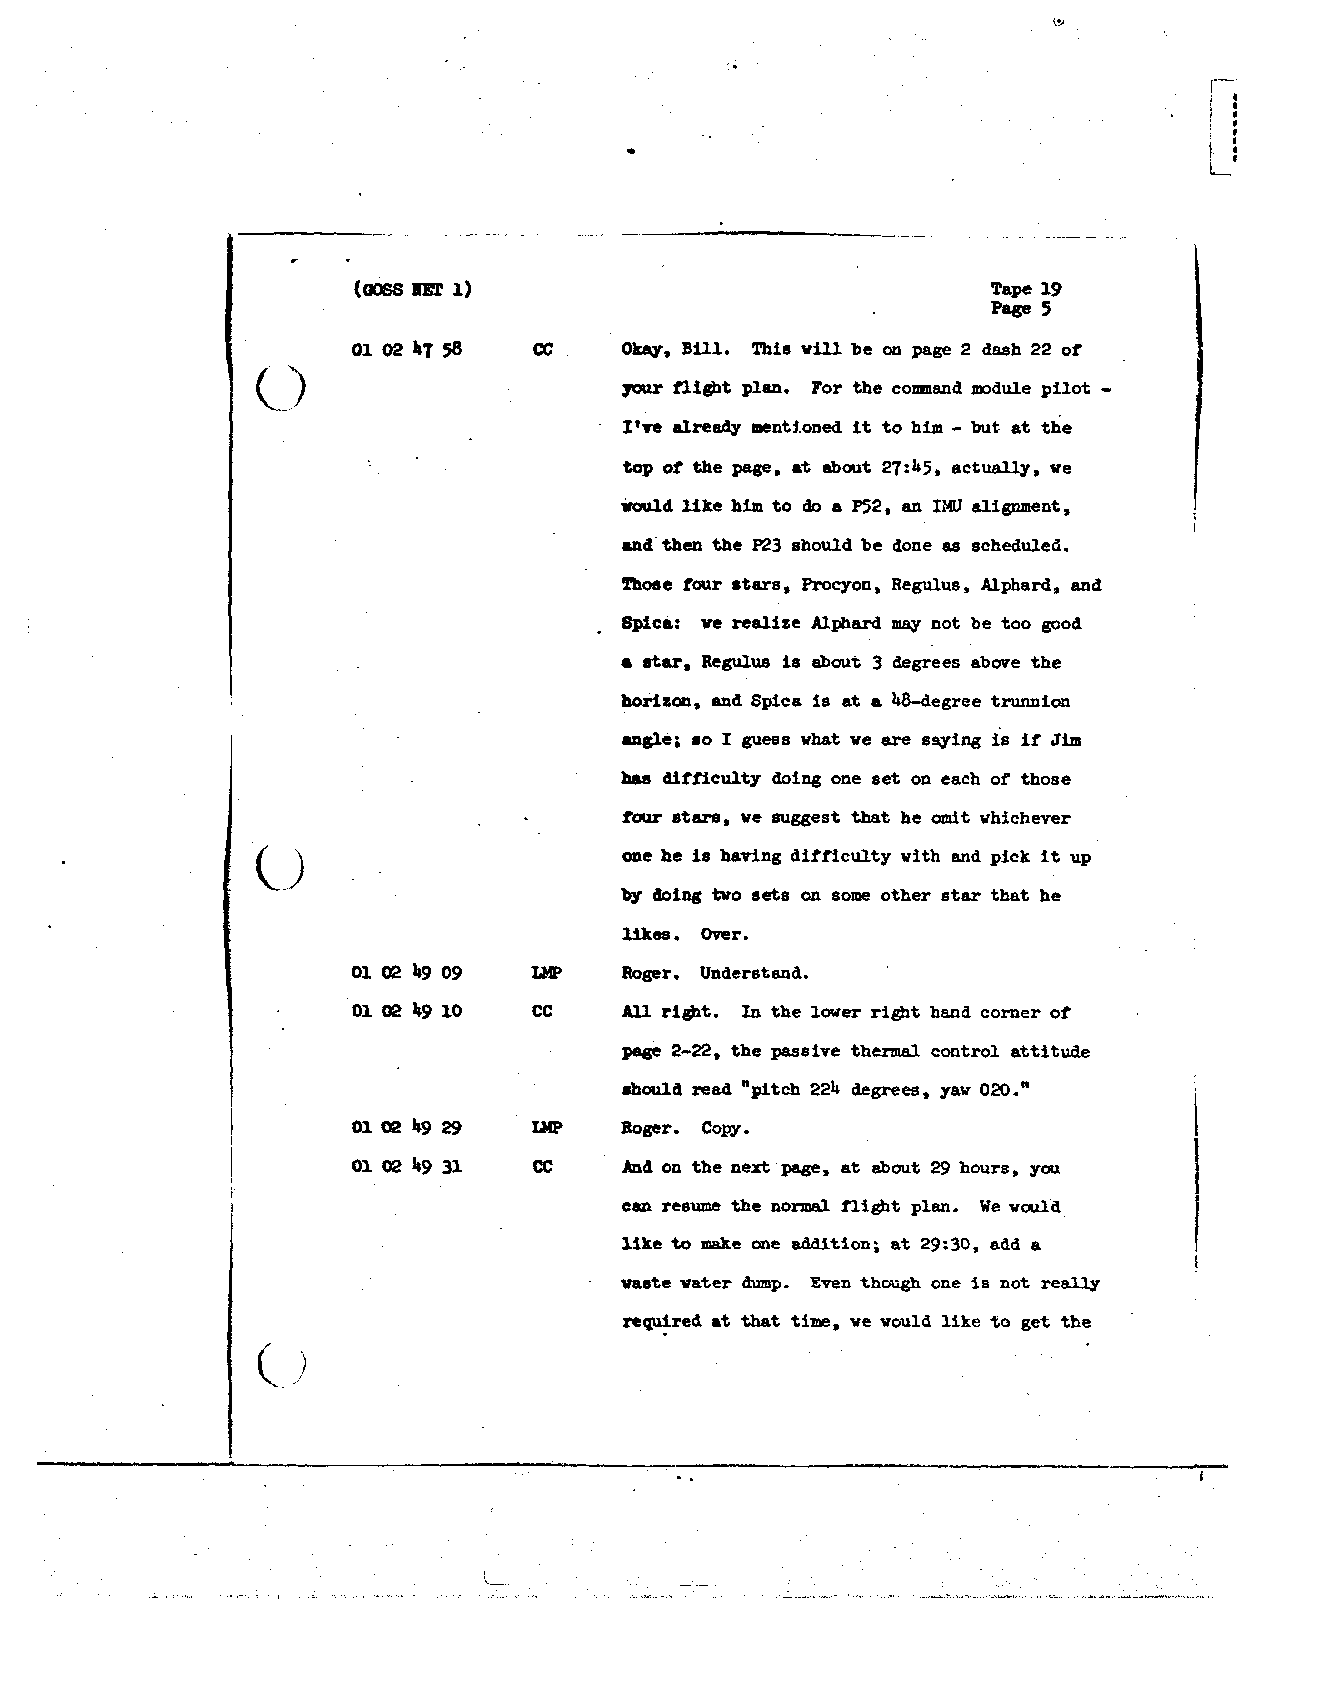 Page 152 of Apollo 8’s original transcript